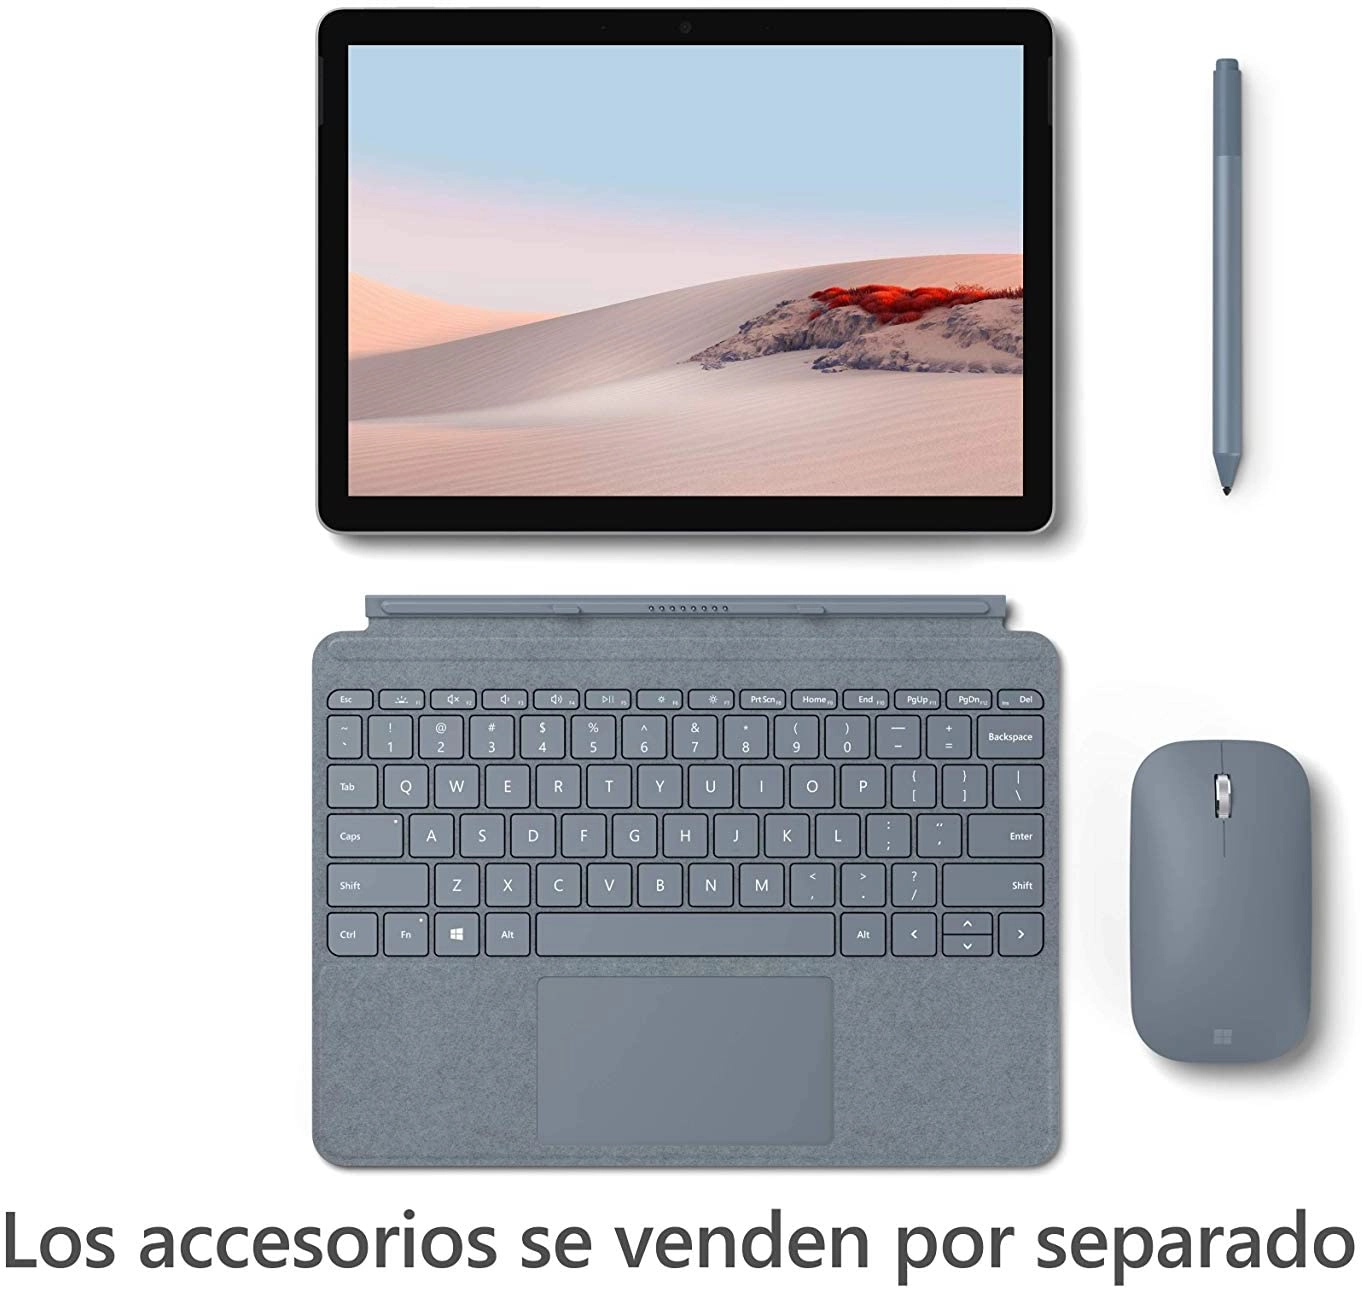 Microsoft Surface Go 2 laptop image